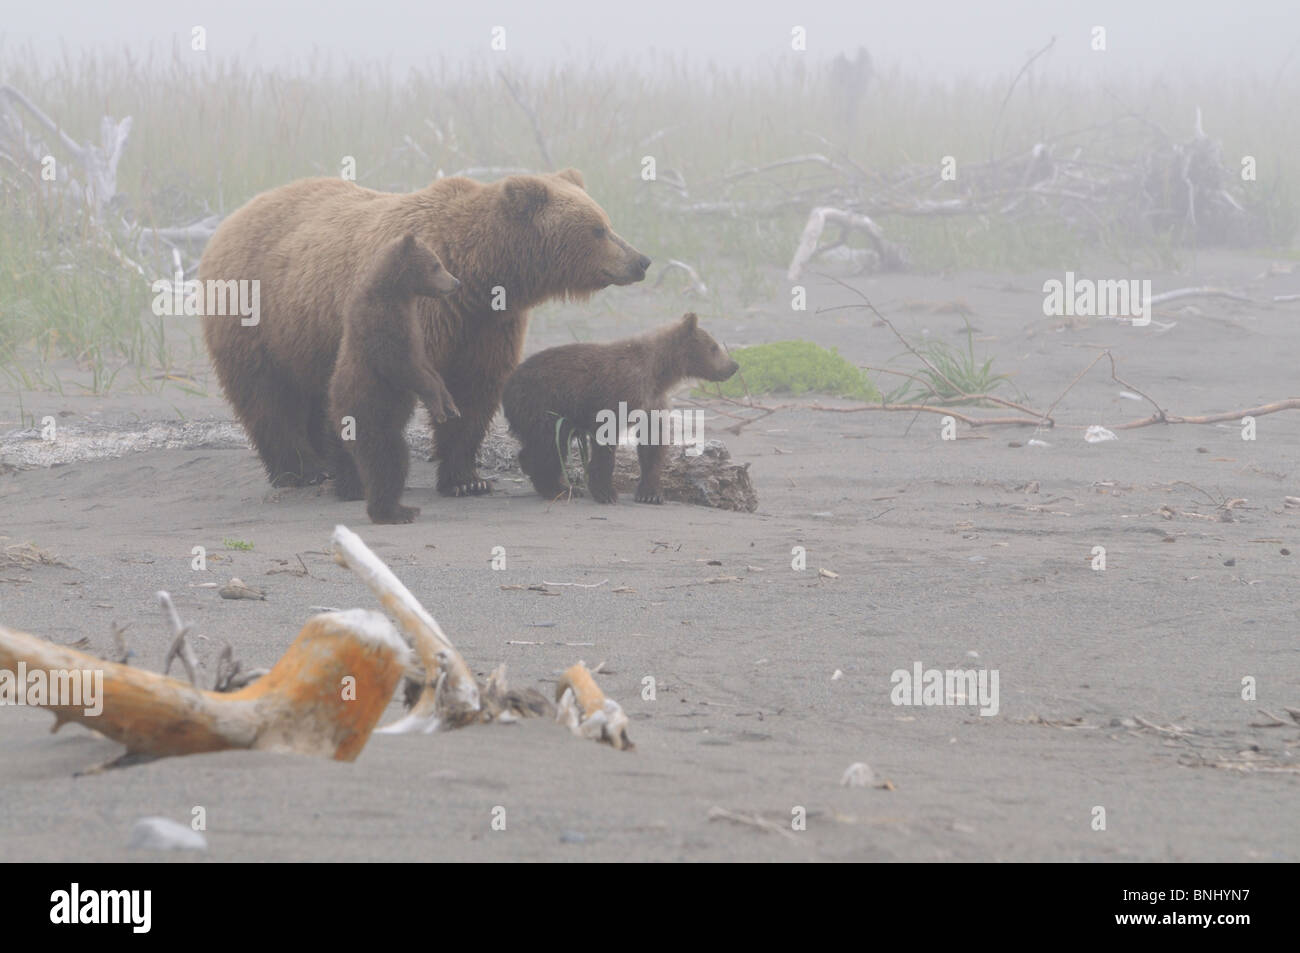 Stock photo d'un ours brun côtières de l'Alaska de truies et deux oursons debout sur la plage, dans le brouillard, Lake Clark National Park. Banque D'Images